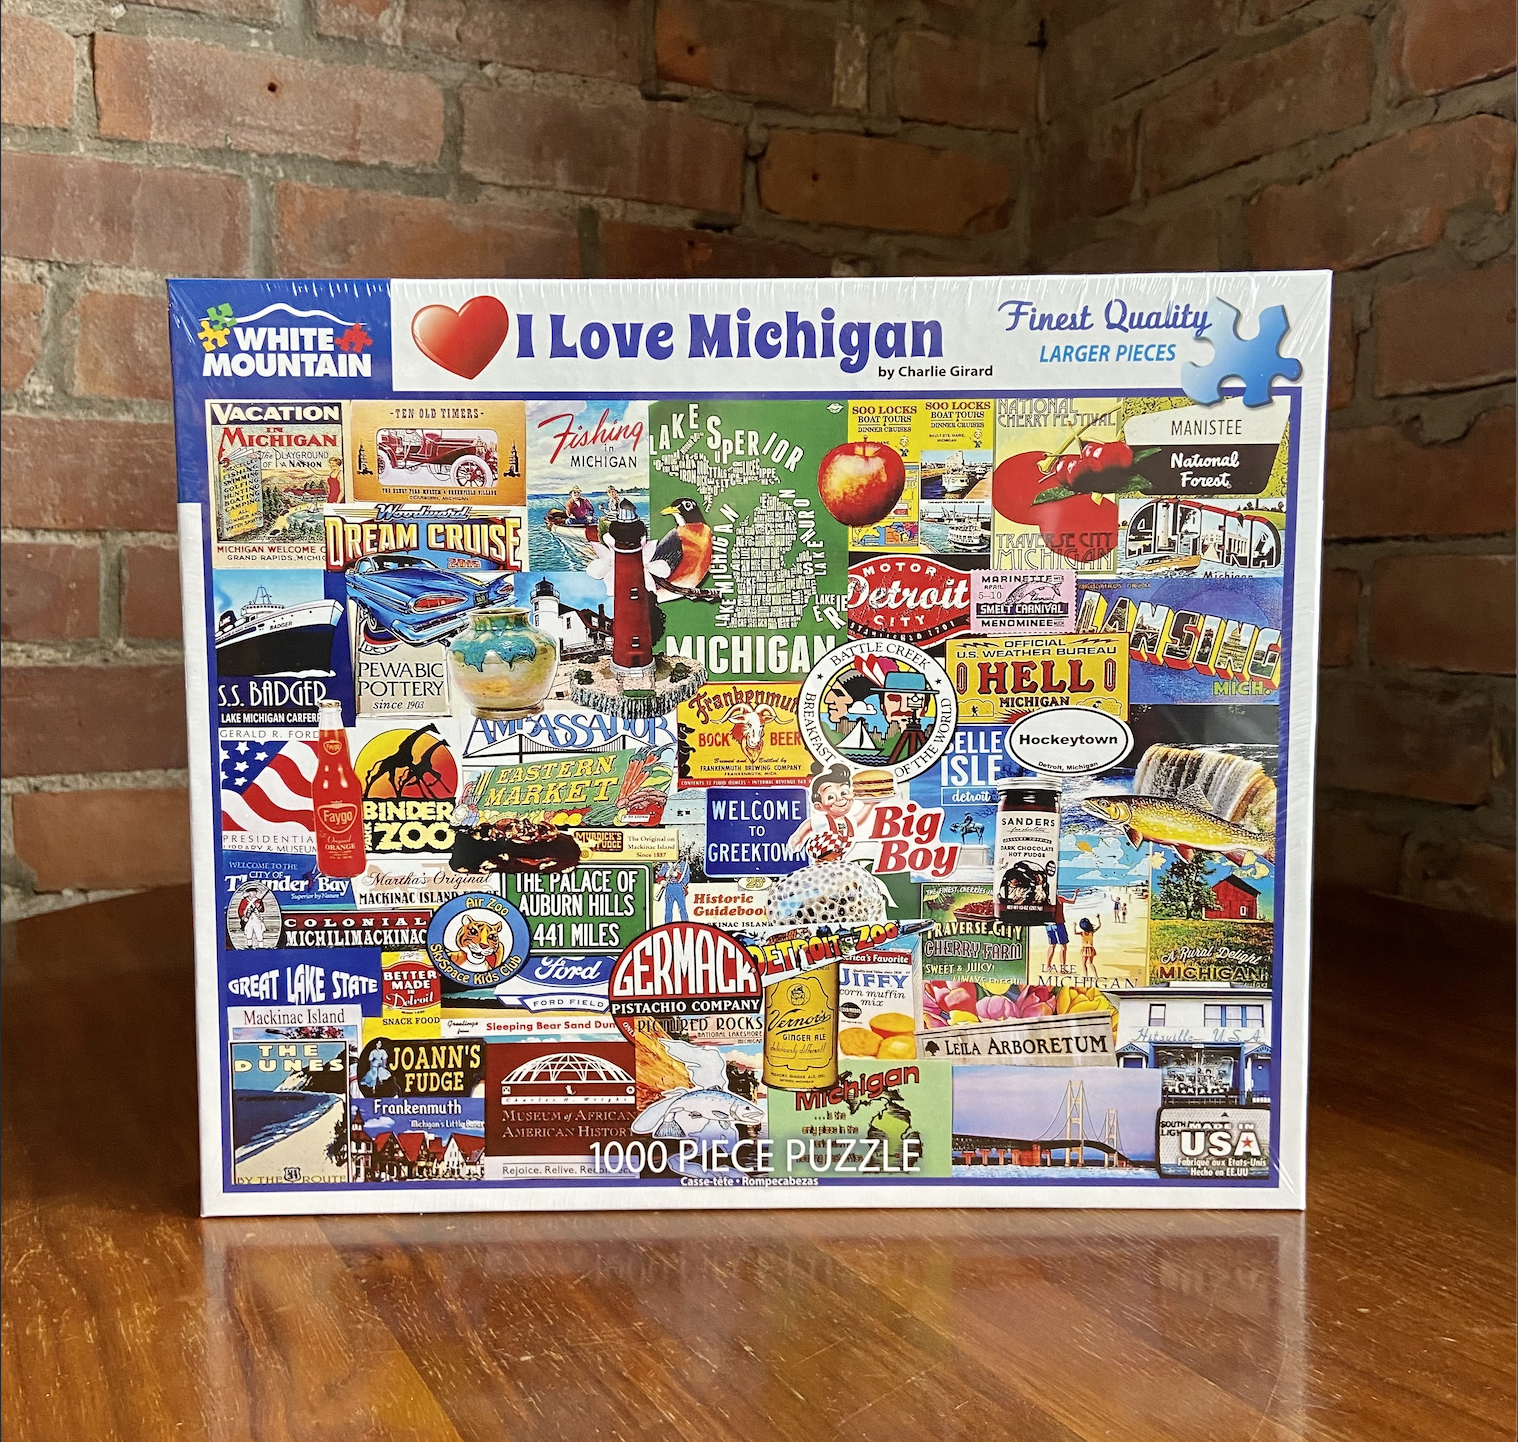 Picture I Love Michigan - 1000 Piece Puzzle